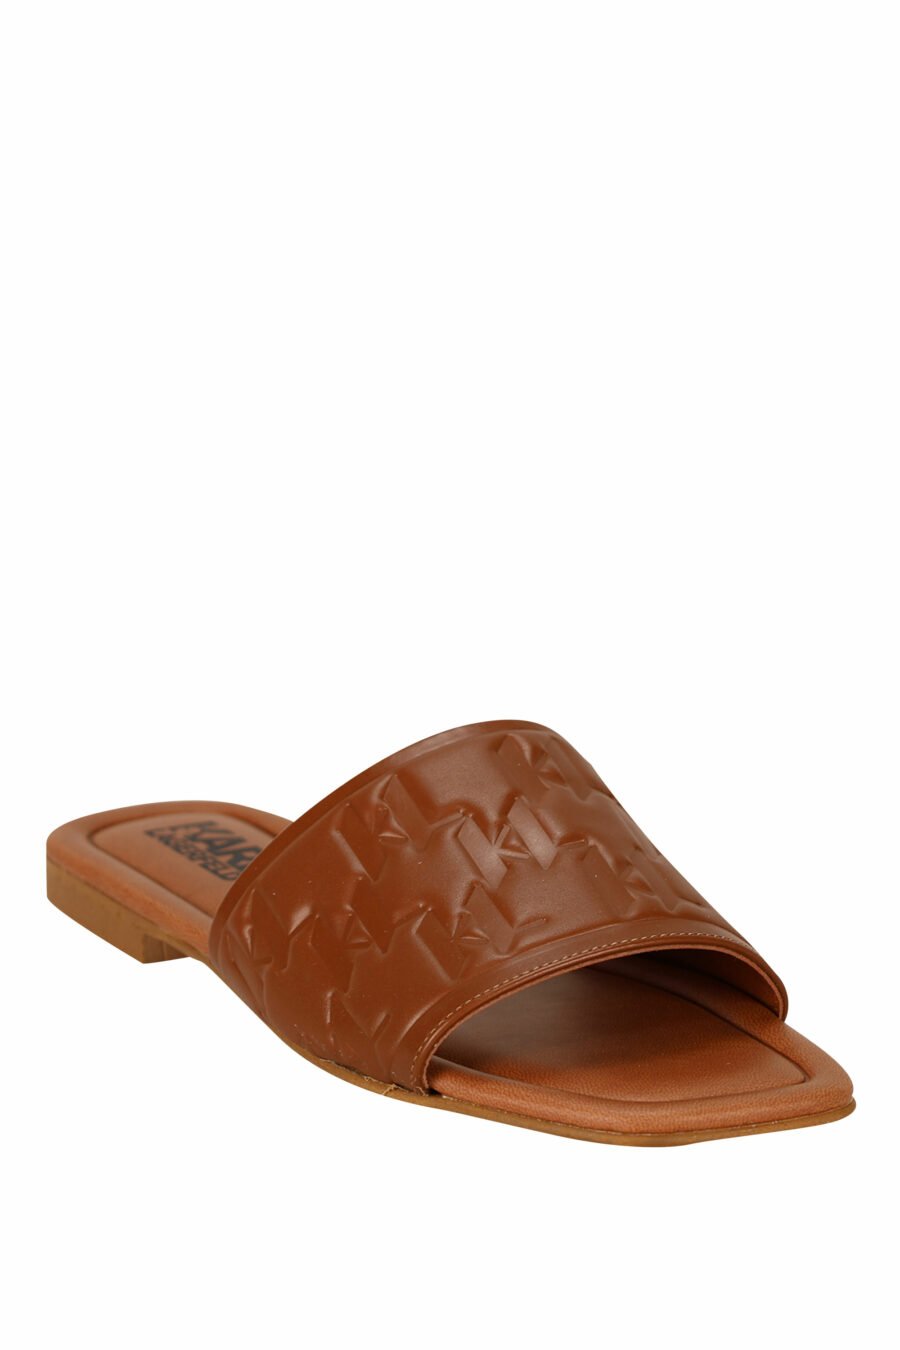 Sandalias marrón de cuero con logo monogram - 5059529404191 1